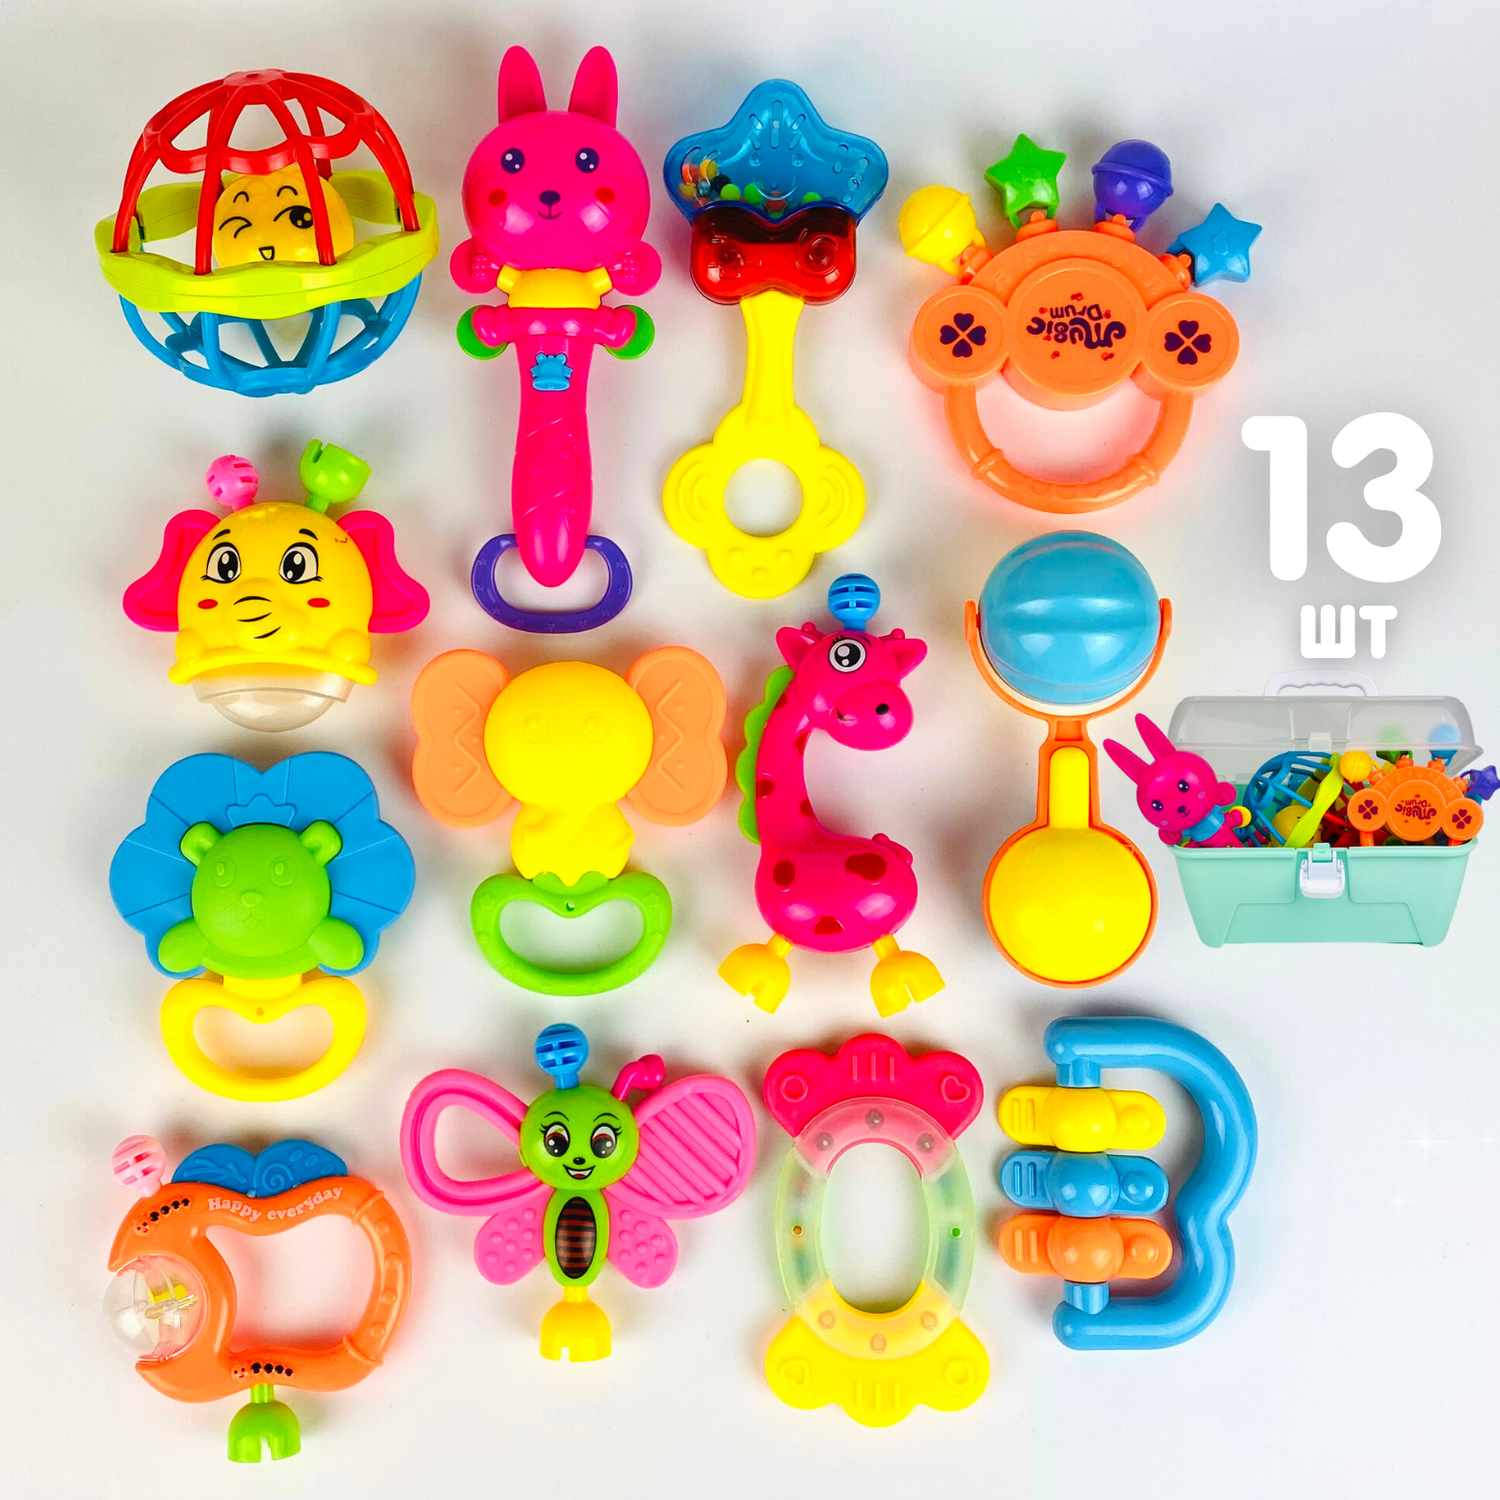 Погремушки и прорезыватели Zeimas развивающие игрушки для новорожденного 0+ 13 шт в кейсе - фото 1